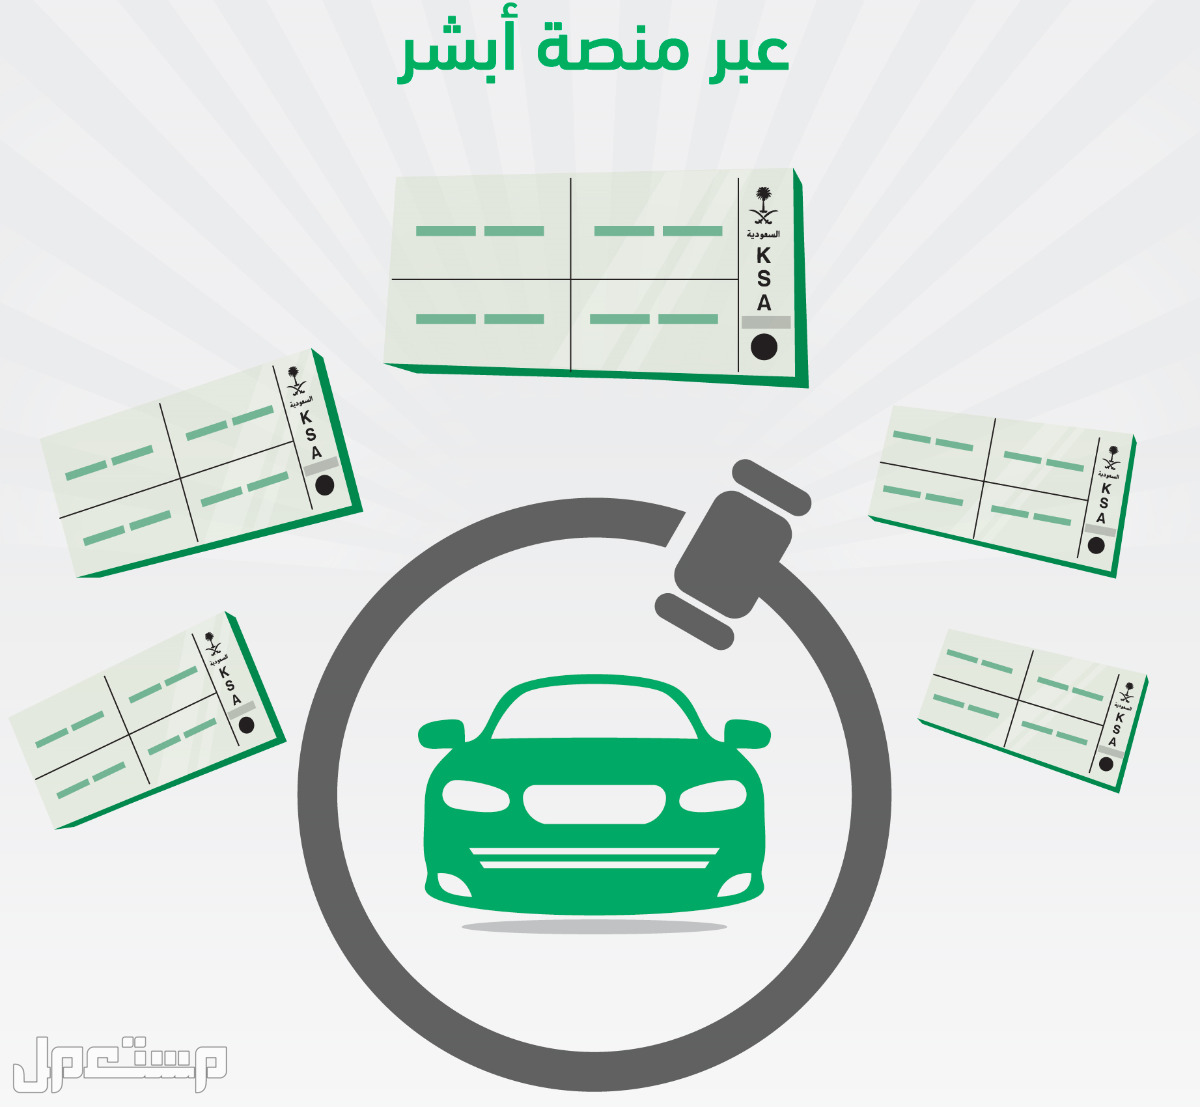 «أبشر» تُعلن انتهاء مزاد اللوحات الإلكتروني الاستثنائي اليوم في السعودية